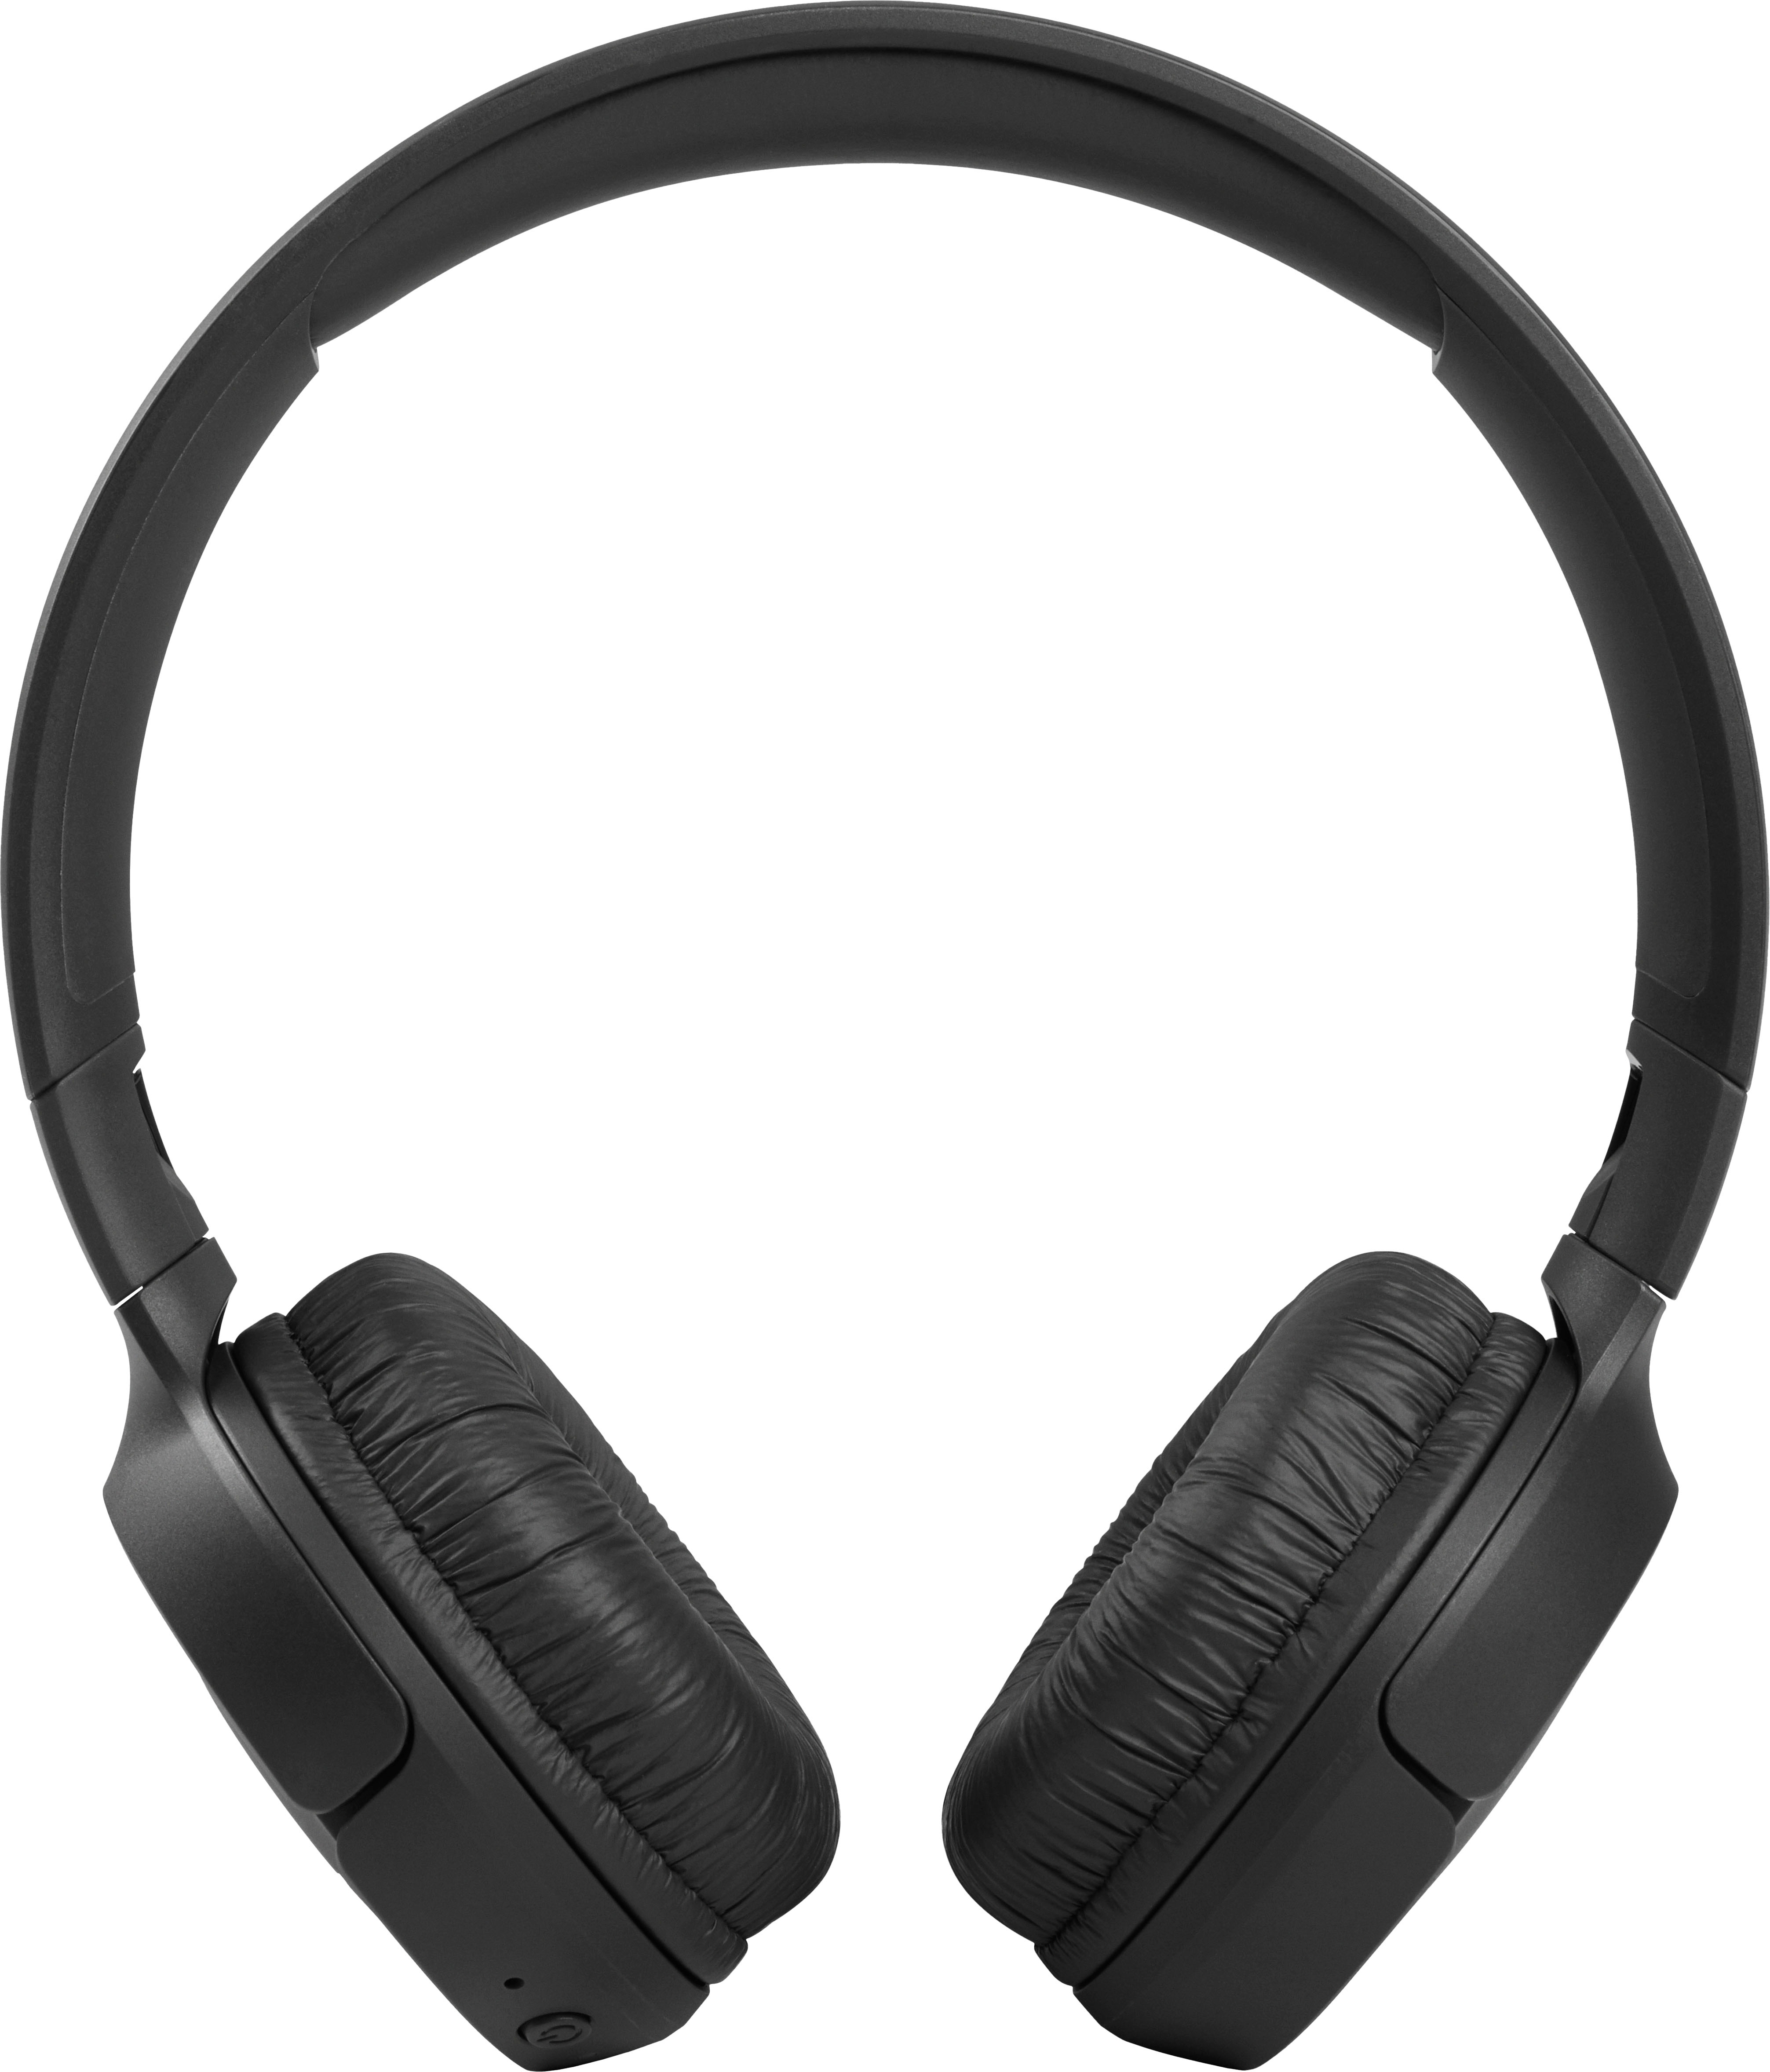 crystal Get angry Antipoison JBL Tune 510BT Wireless On-Ear Headphones Black JBLT510BTBLKAM - Best Buy